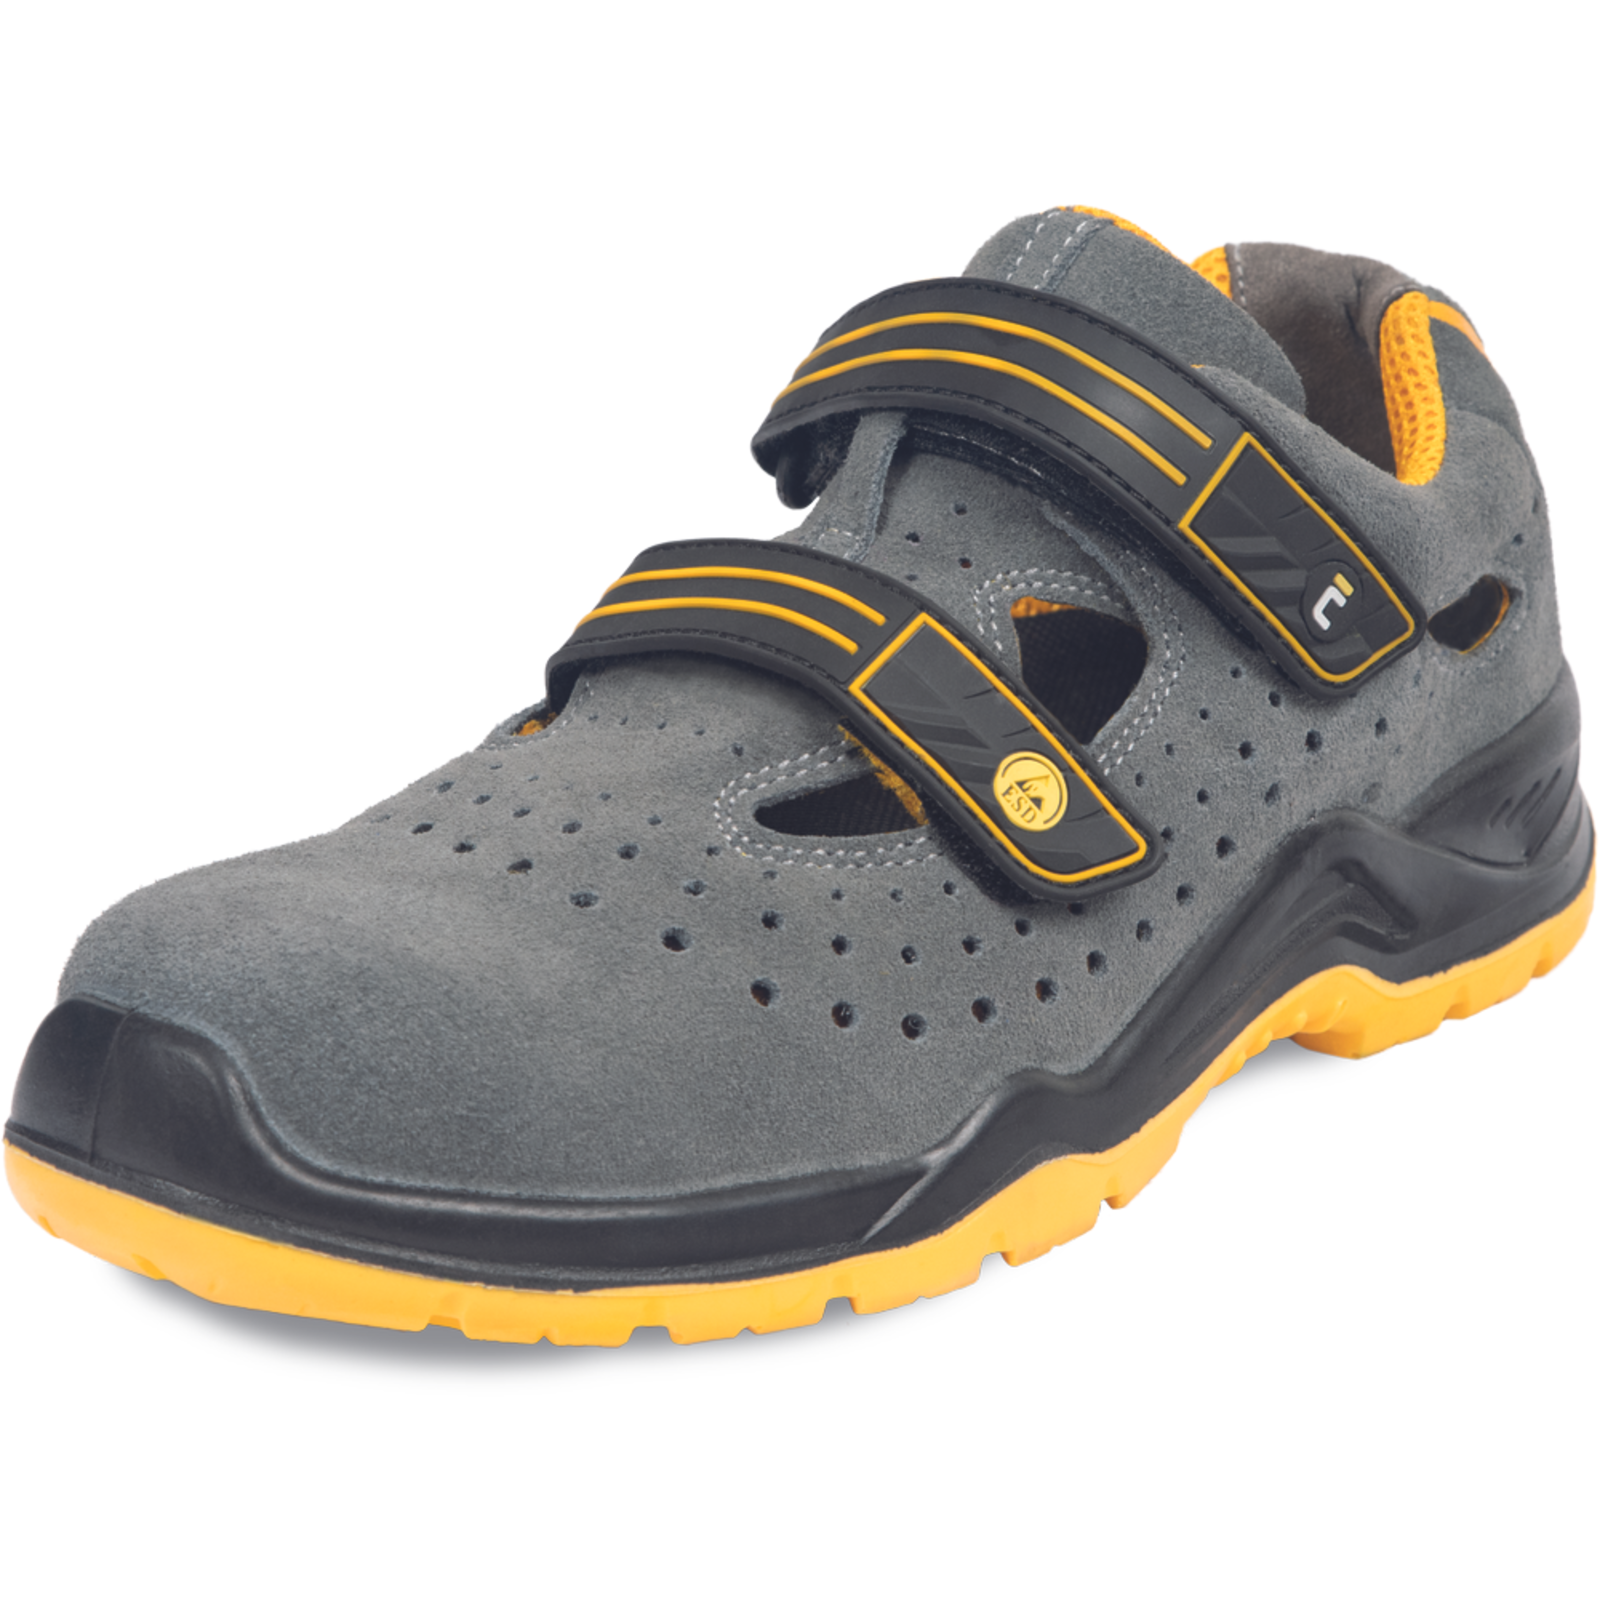 Pracovné bezpečnostné sandále Cerva Yuwill MF ESD S1P SRC - veľkosť: 45, farba: sivá/žltá